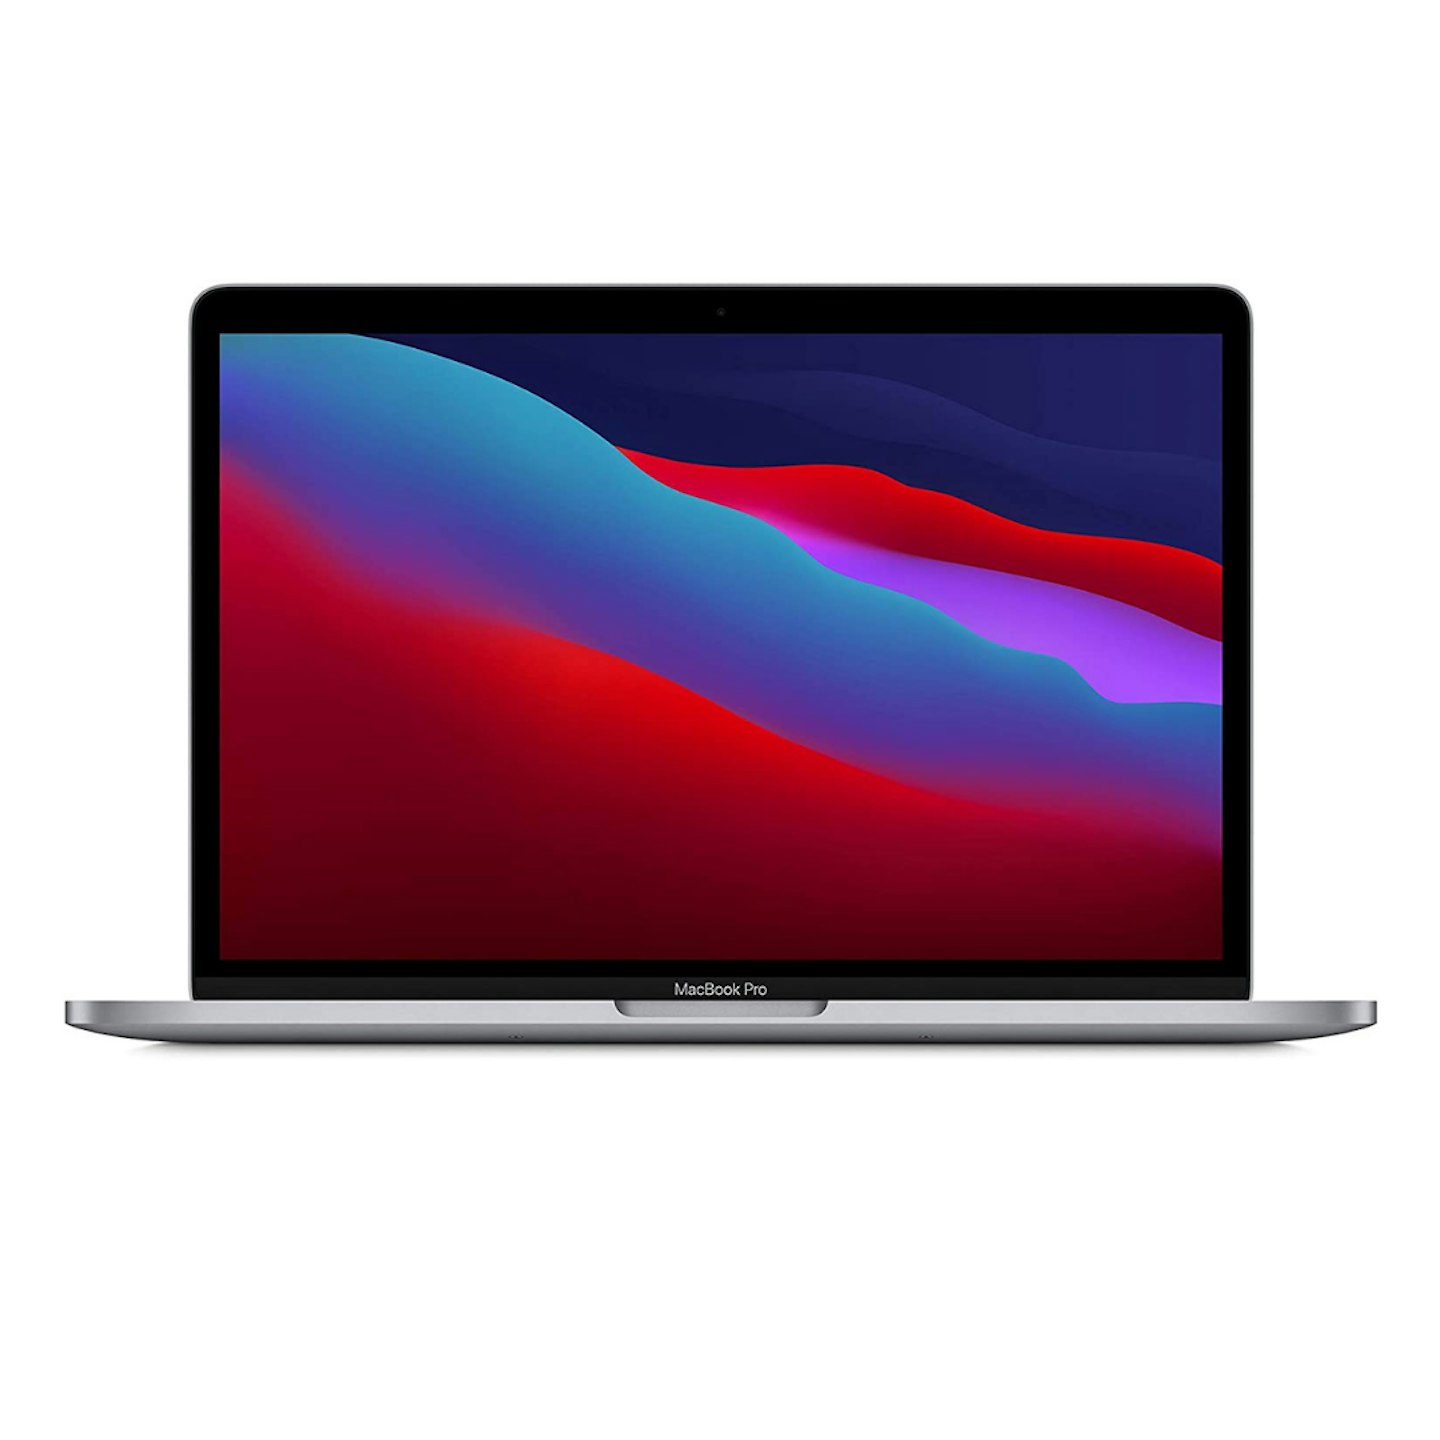 13" Inch MacBook Pro